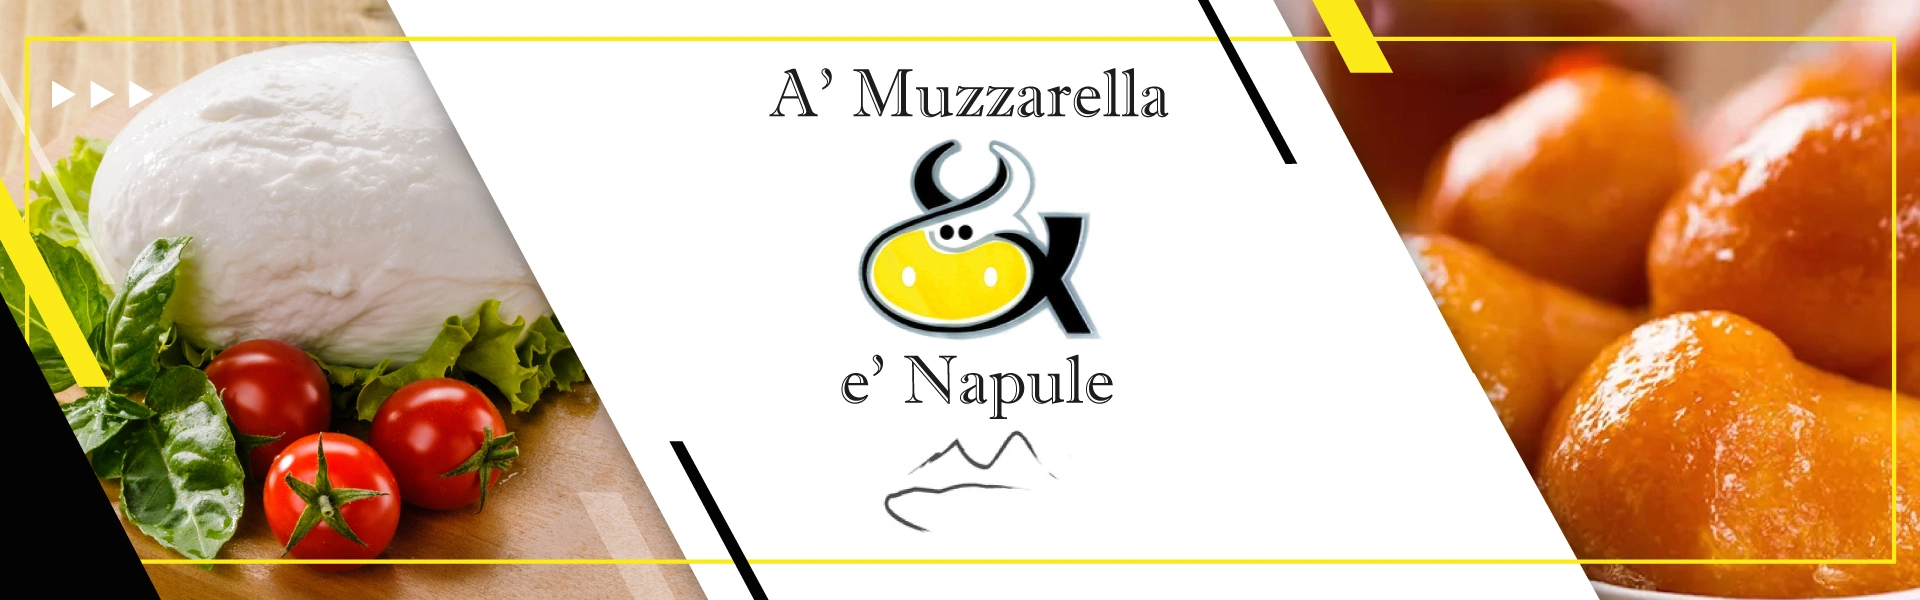 Logo prodotti gastronomici campani